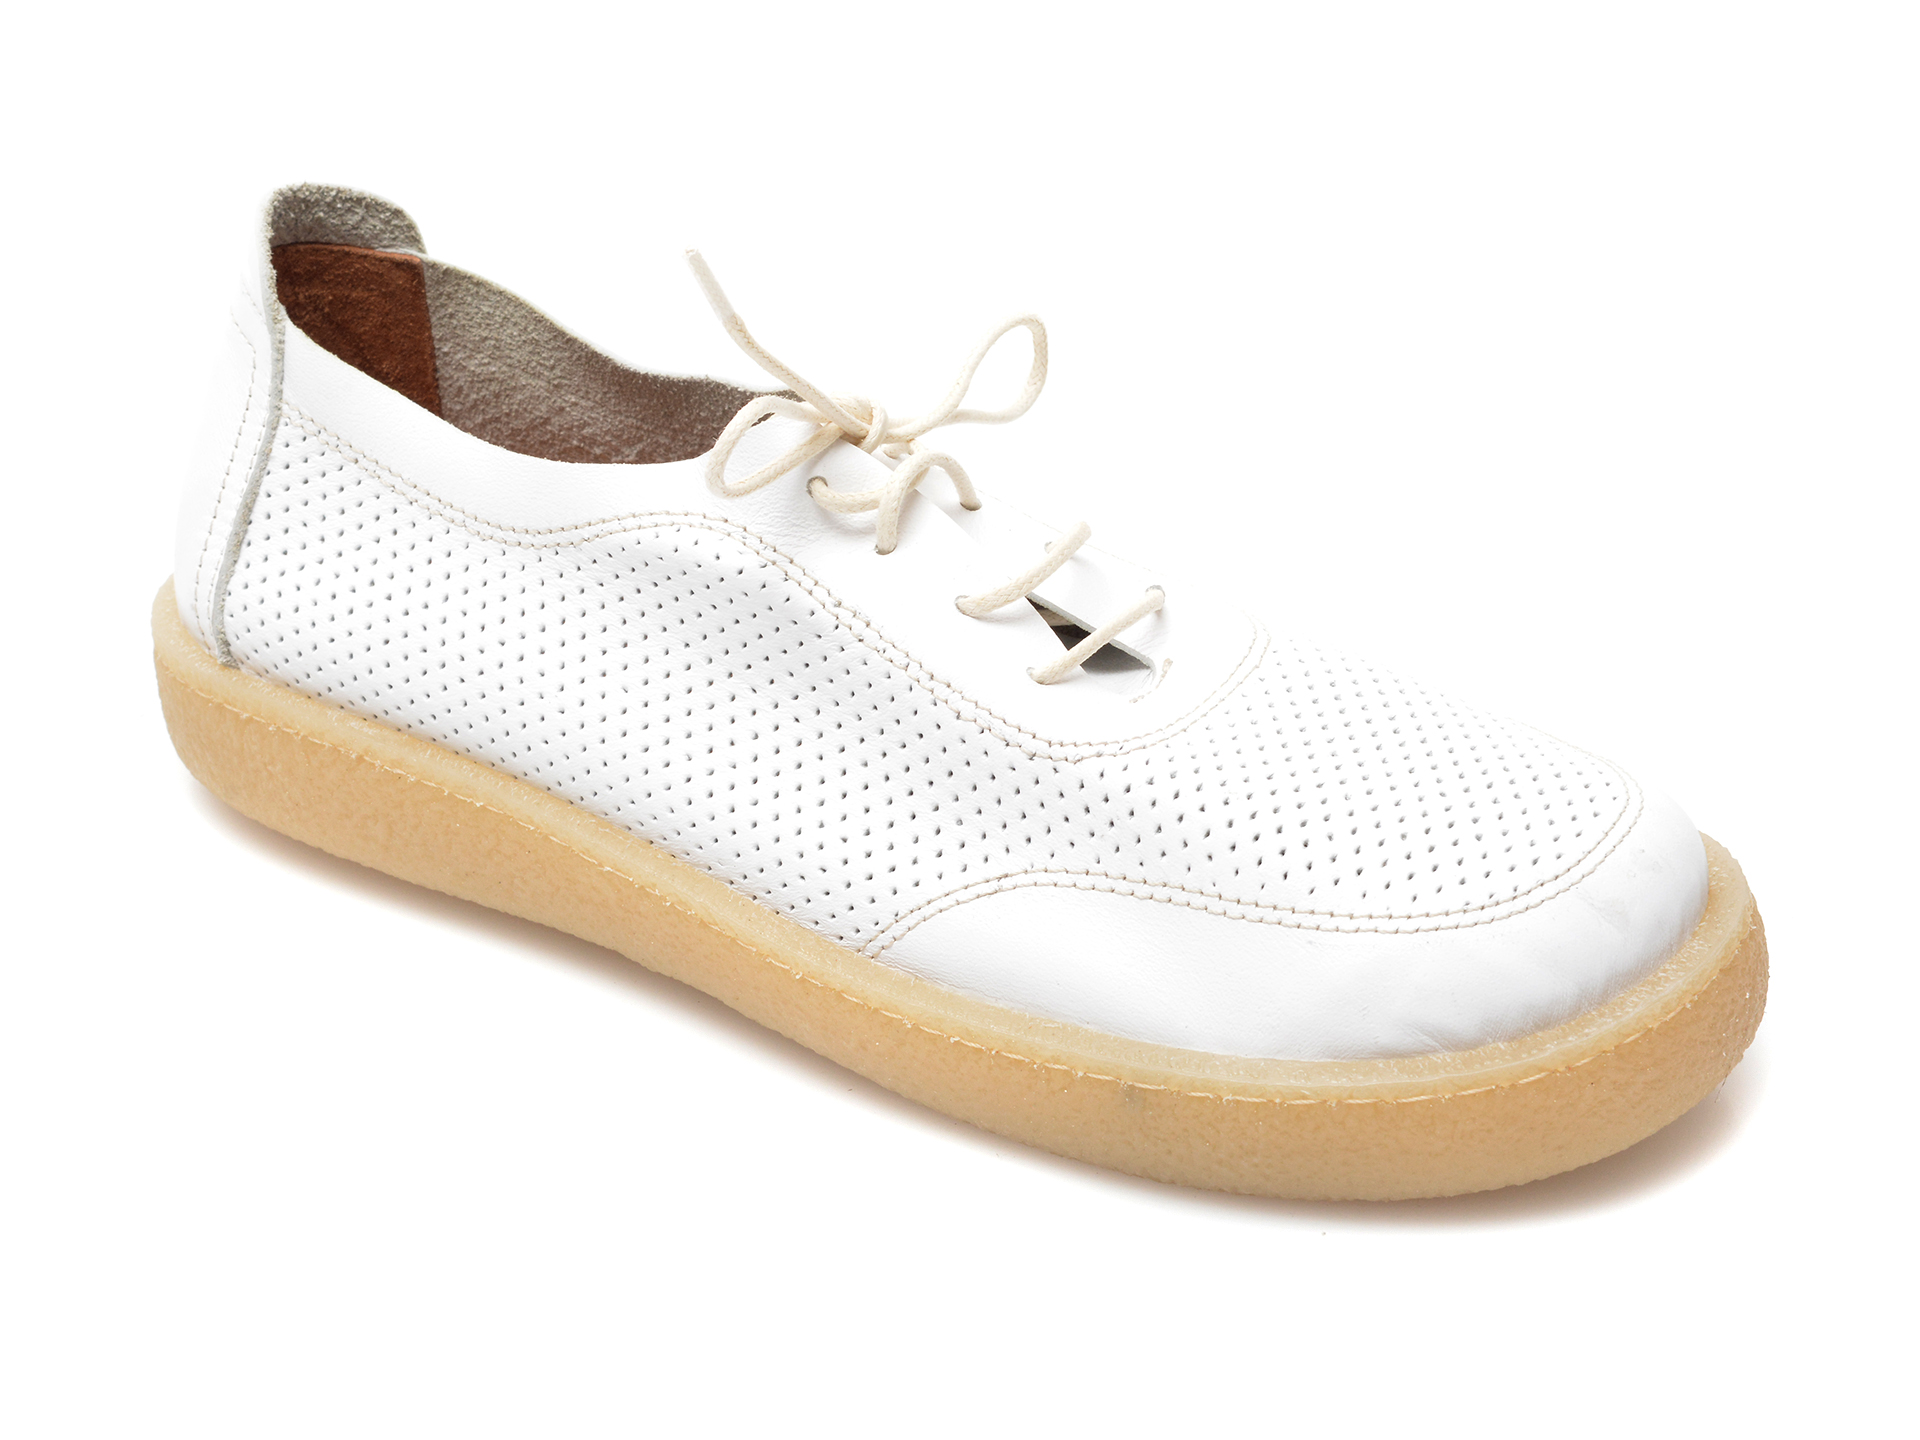 Pantofi FLAVIA PASSINI albi, 20712, din piele naturala Flavia Passini